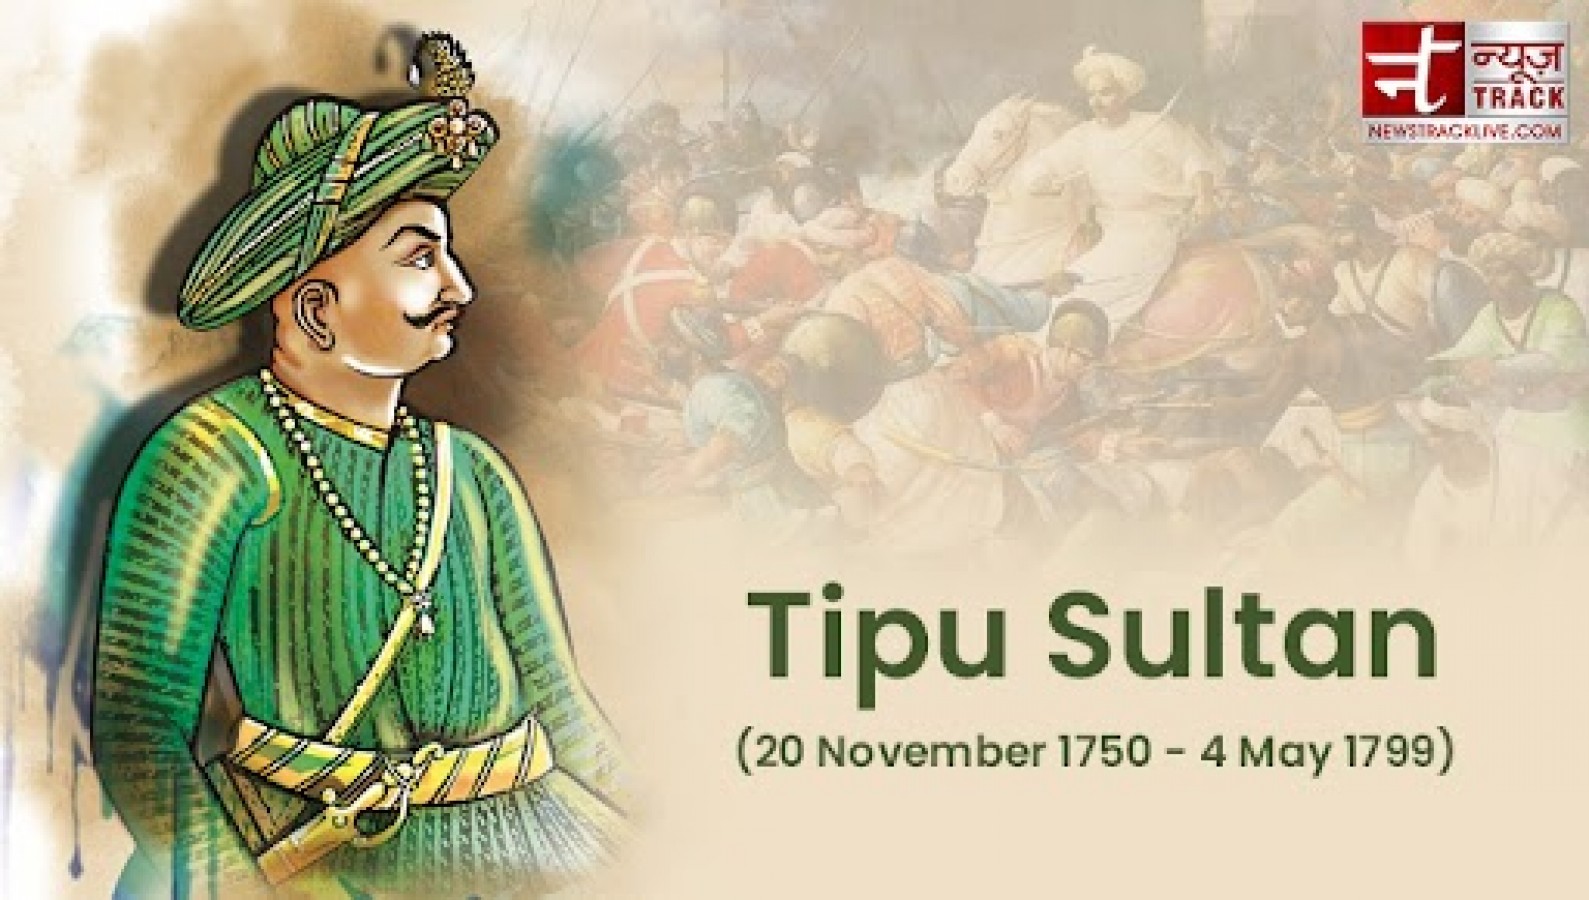 Tuy có những lời phê bình về việc Tipu Sultan là một kẻ tàn bạo, nhưng không thể phủ nhận rằng ông ấy đã là một chiến sỹ dũng cảm và đóng góp rất nhiều vào cuộc chiến cho độc lập của Ấn Độ. Tìm hiểu thêm về đời sống, sự nghiệp và sự nghiệp của ông ấy bằng cách xem hình ảnh. 